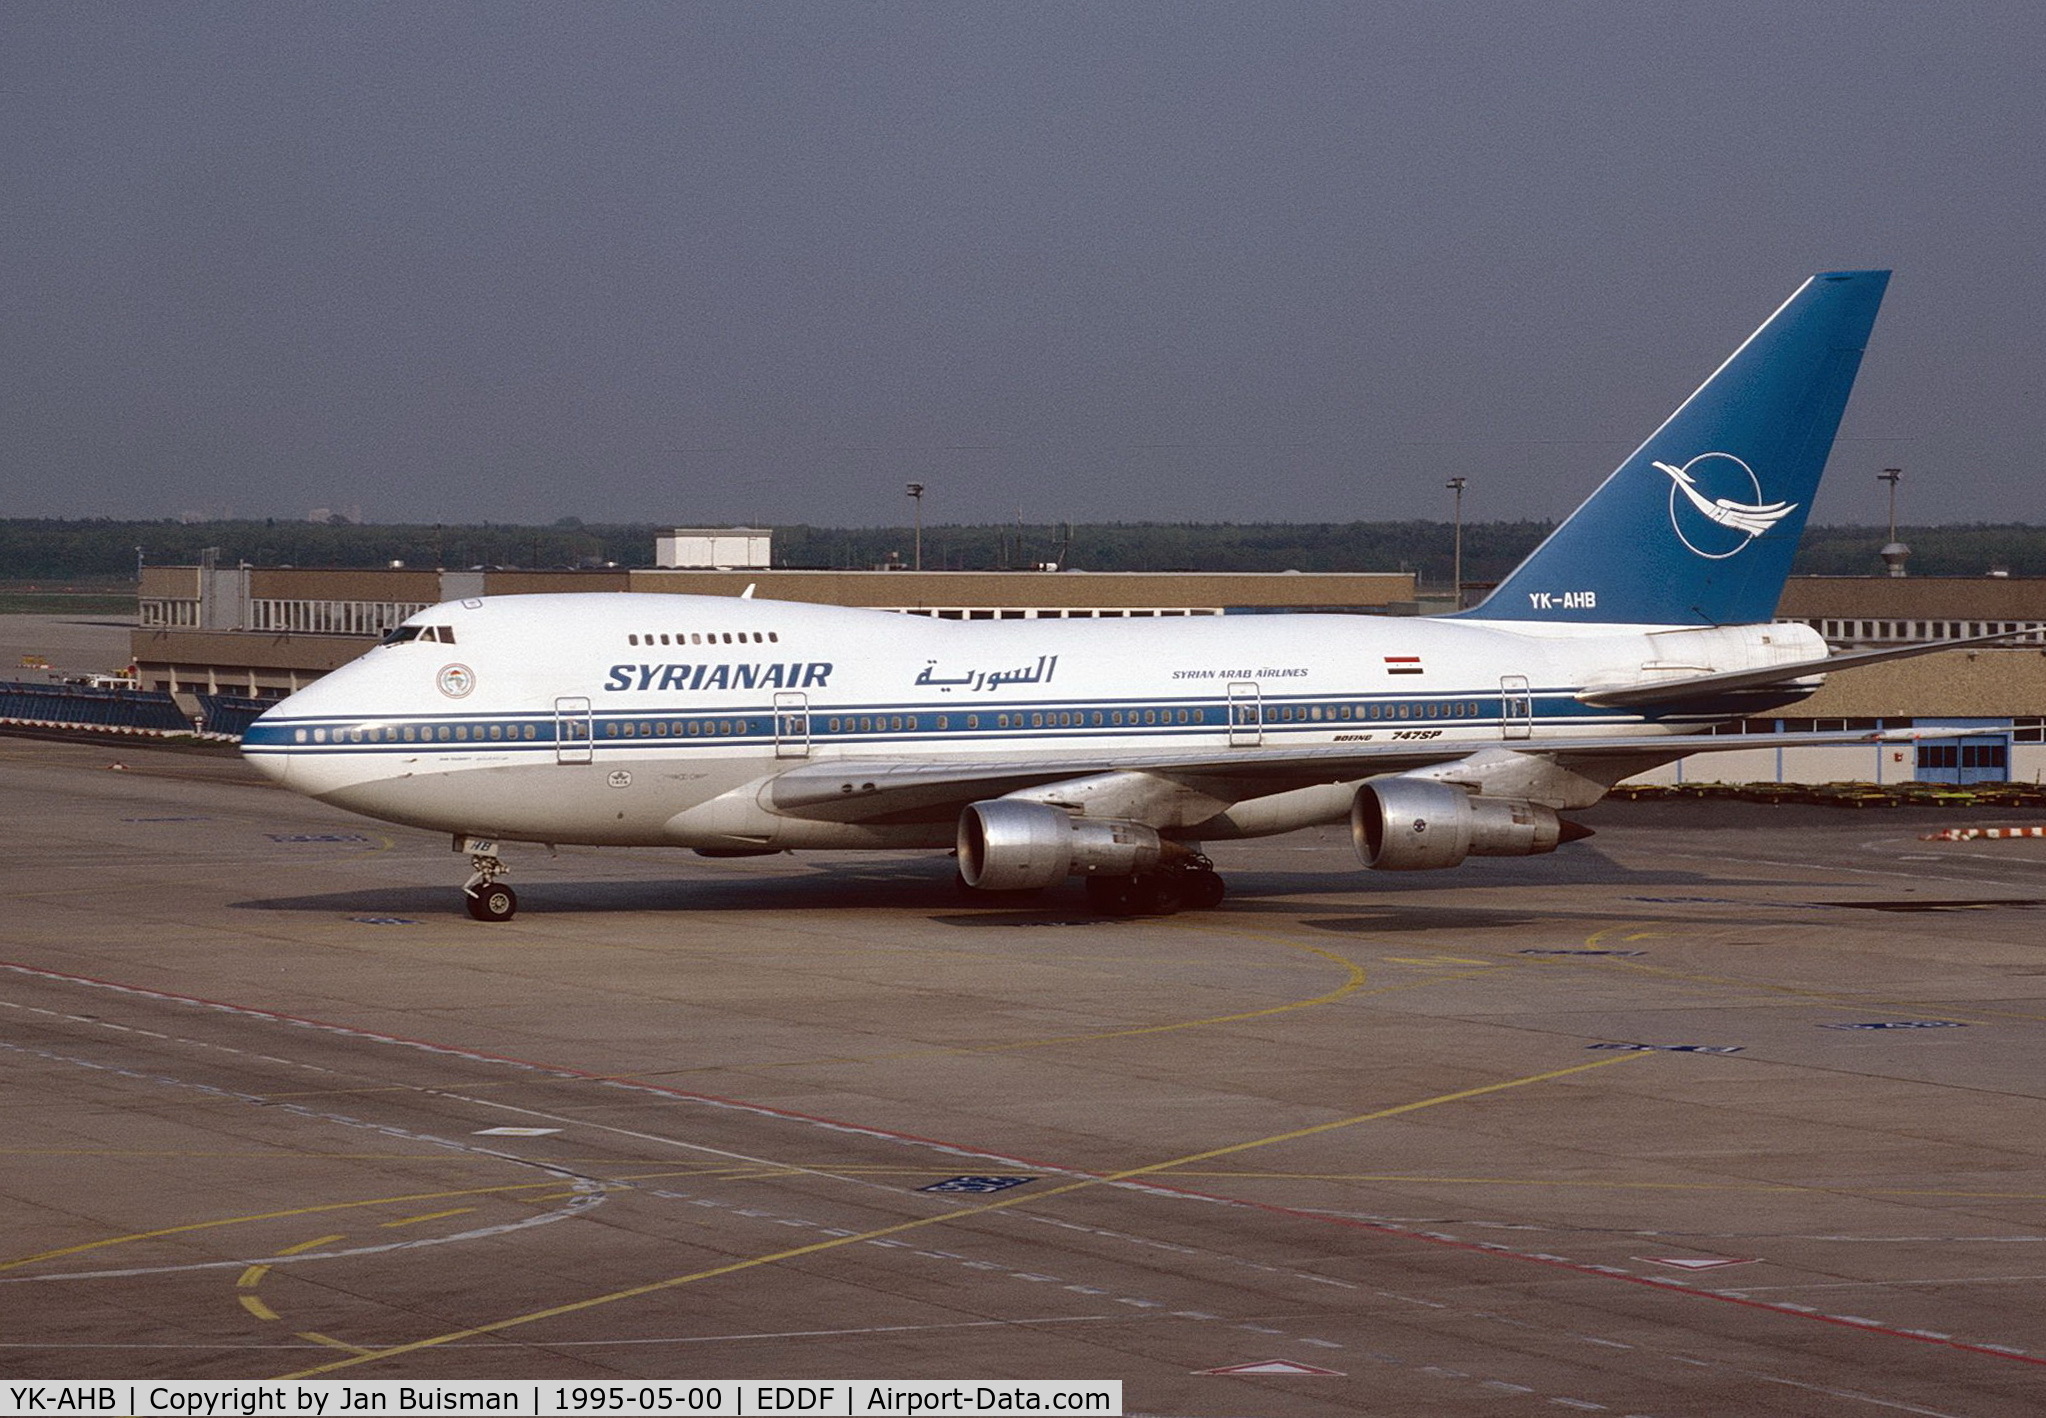 YK-AHB, 1976 Boeing 747SP-94 C/N 21175, Kuwair Airways